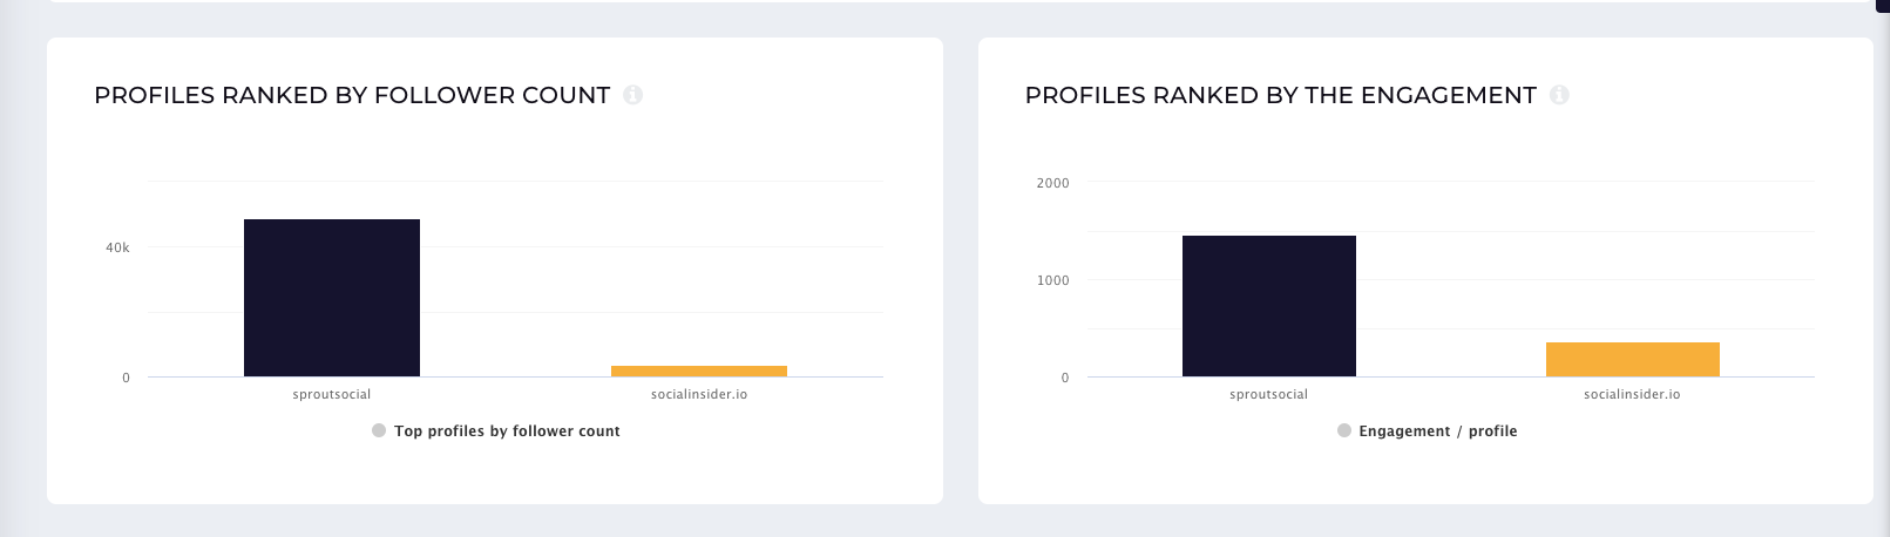 profiles-ranked